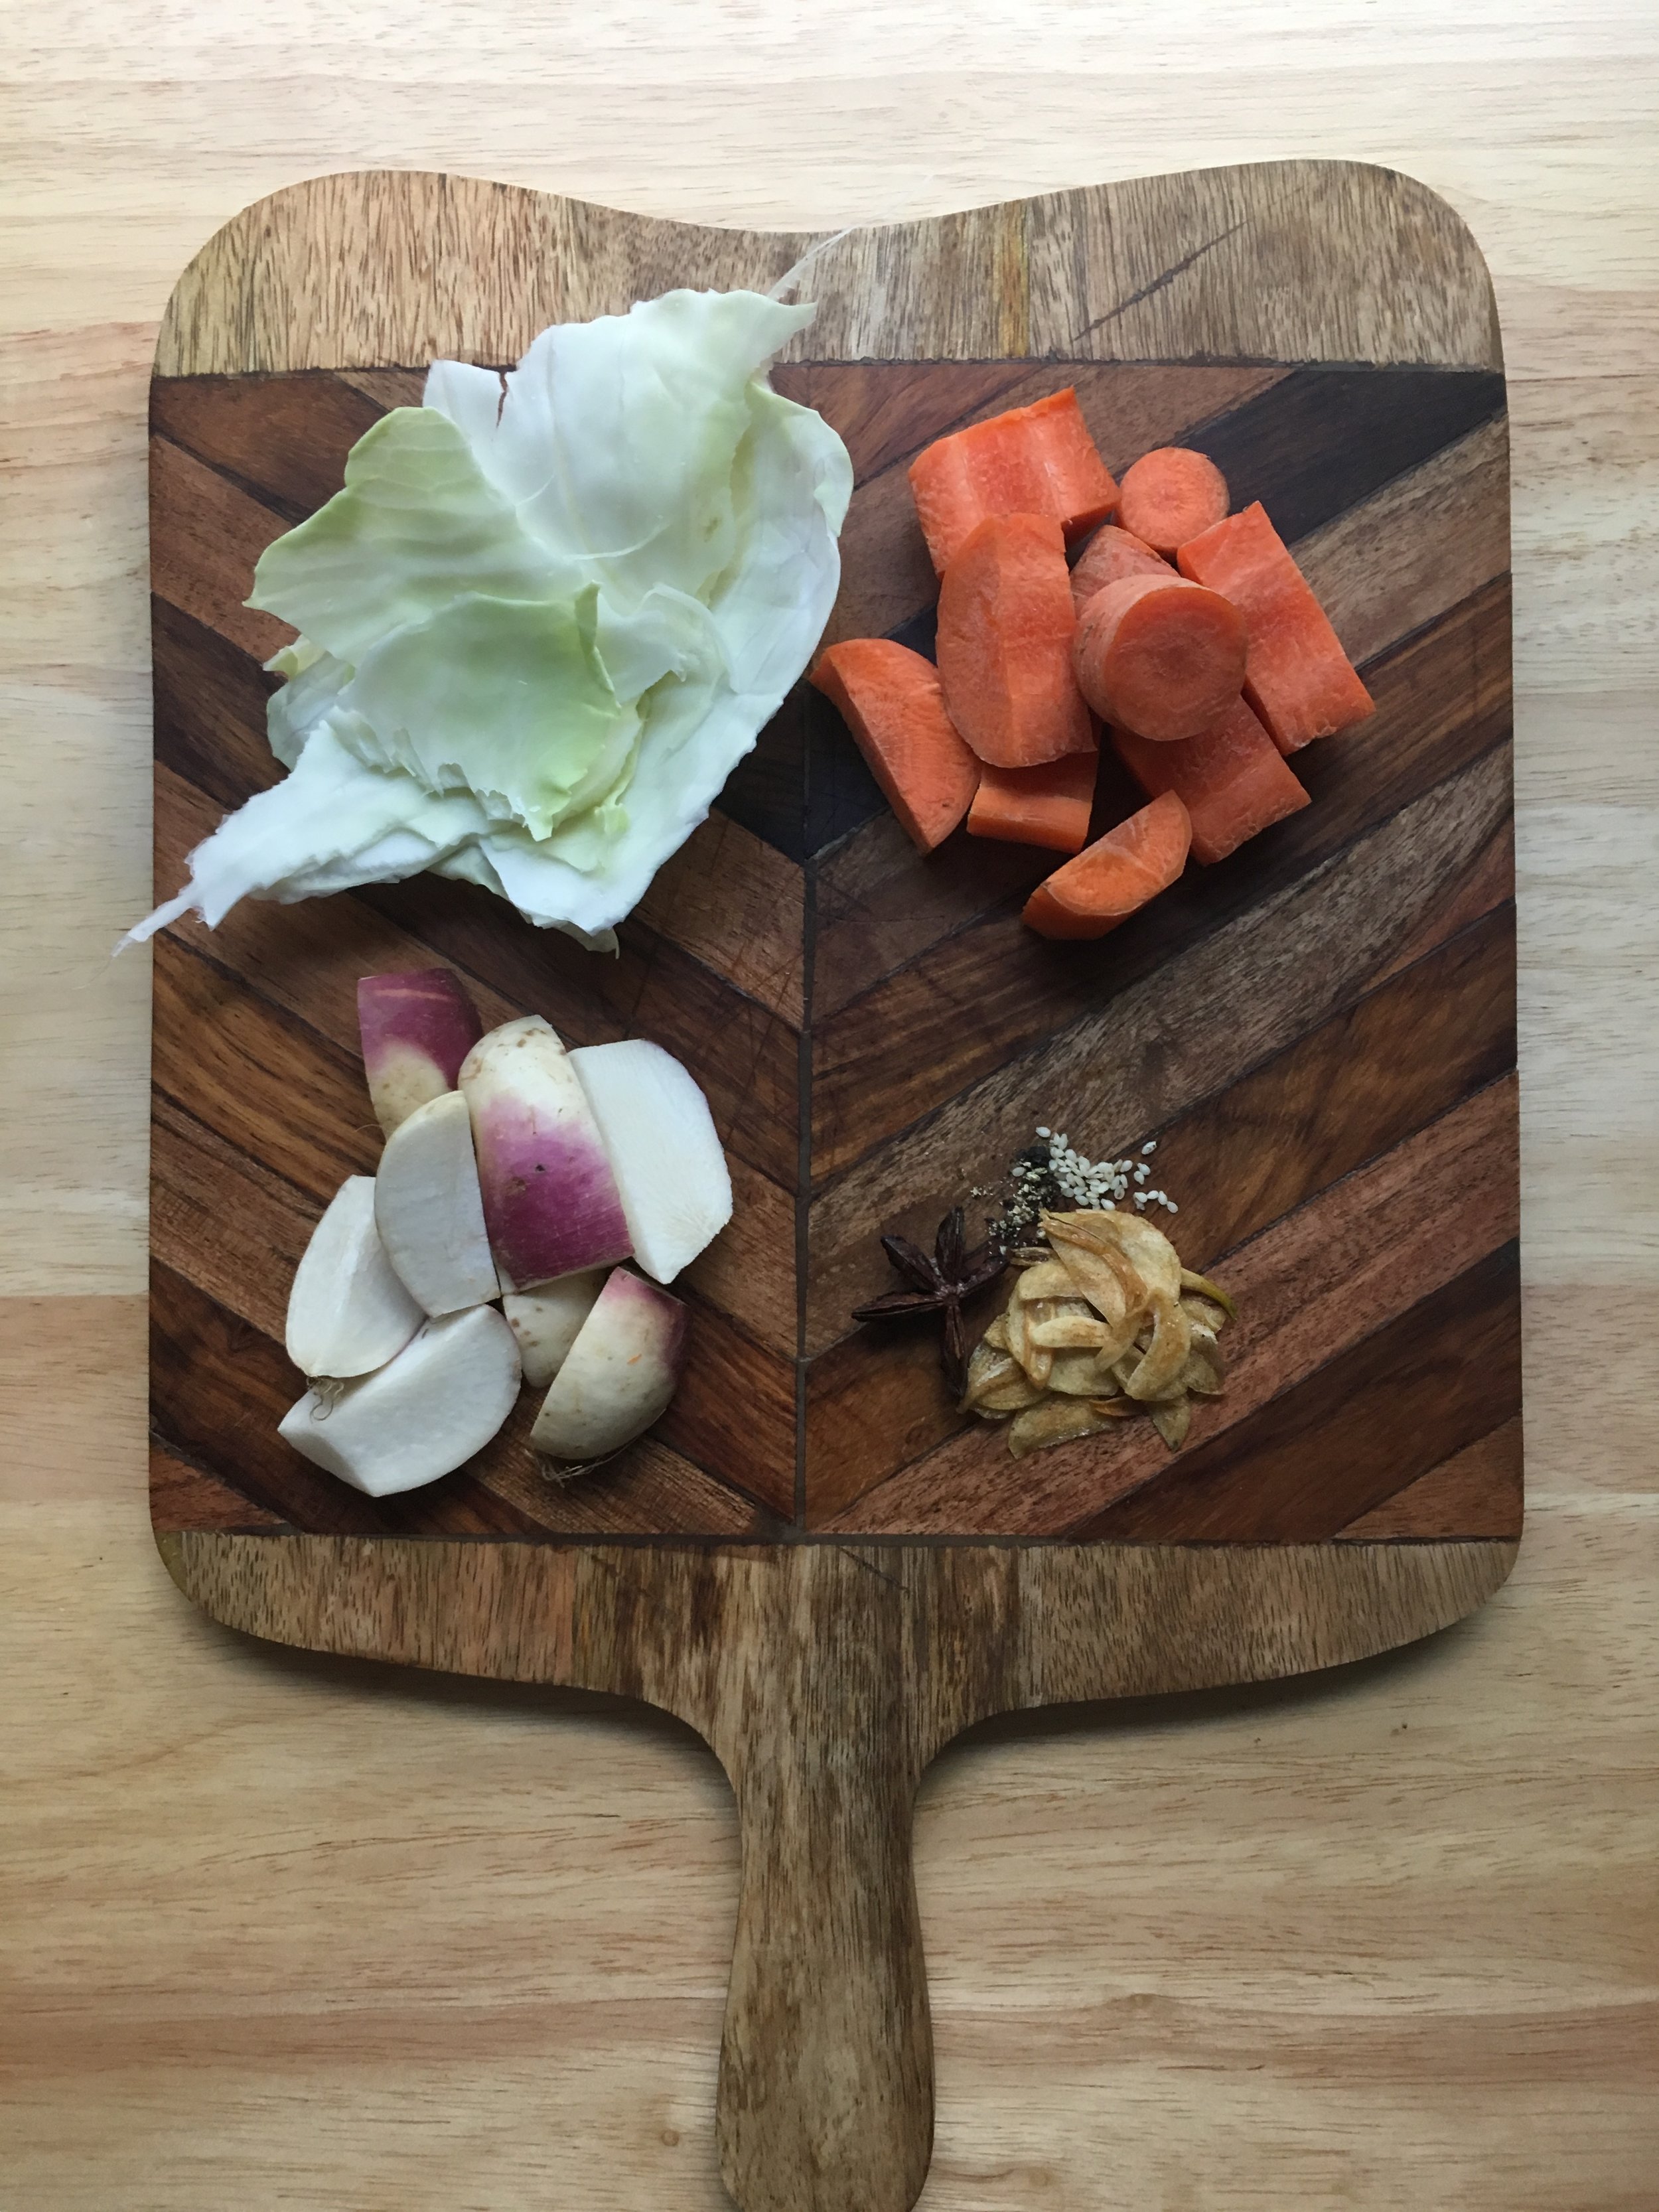 Vegetable Cutter Cabbage Slicer Vegetables Graters Cabbage S - Inspire  Uplift